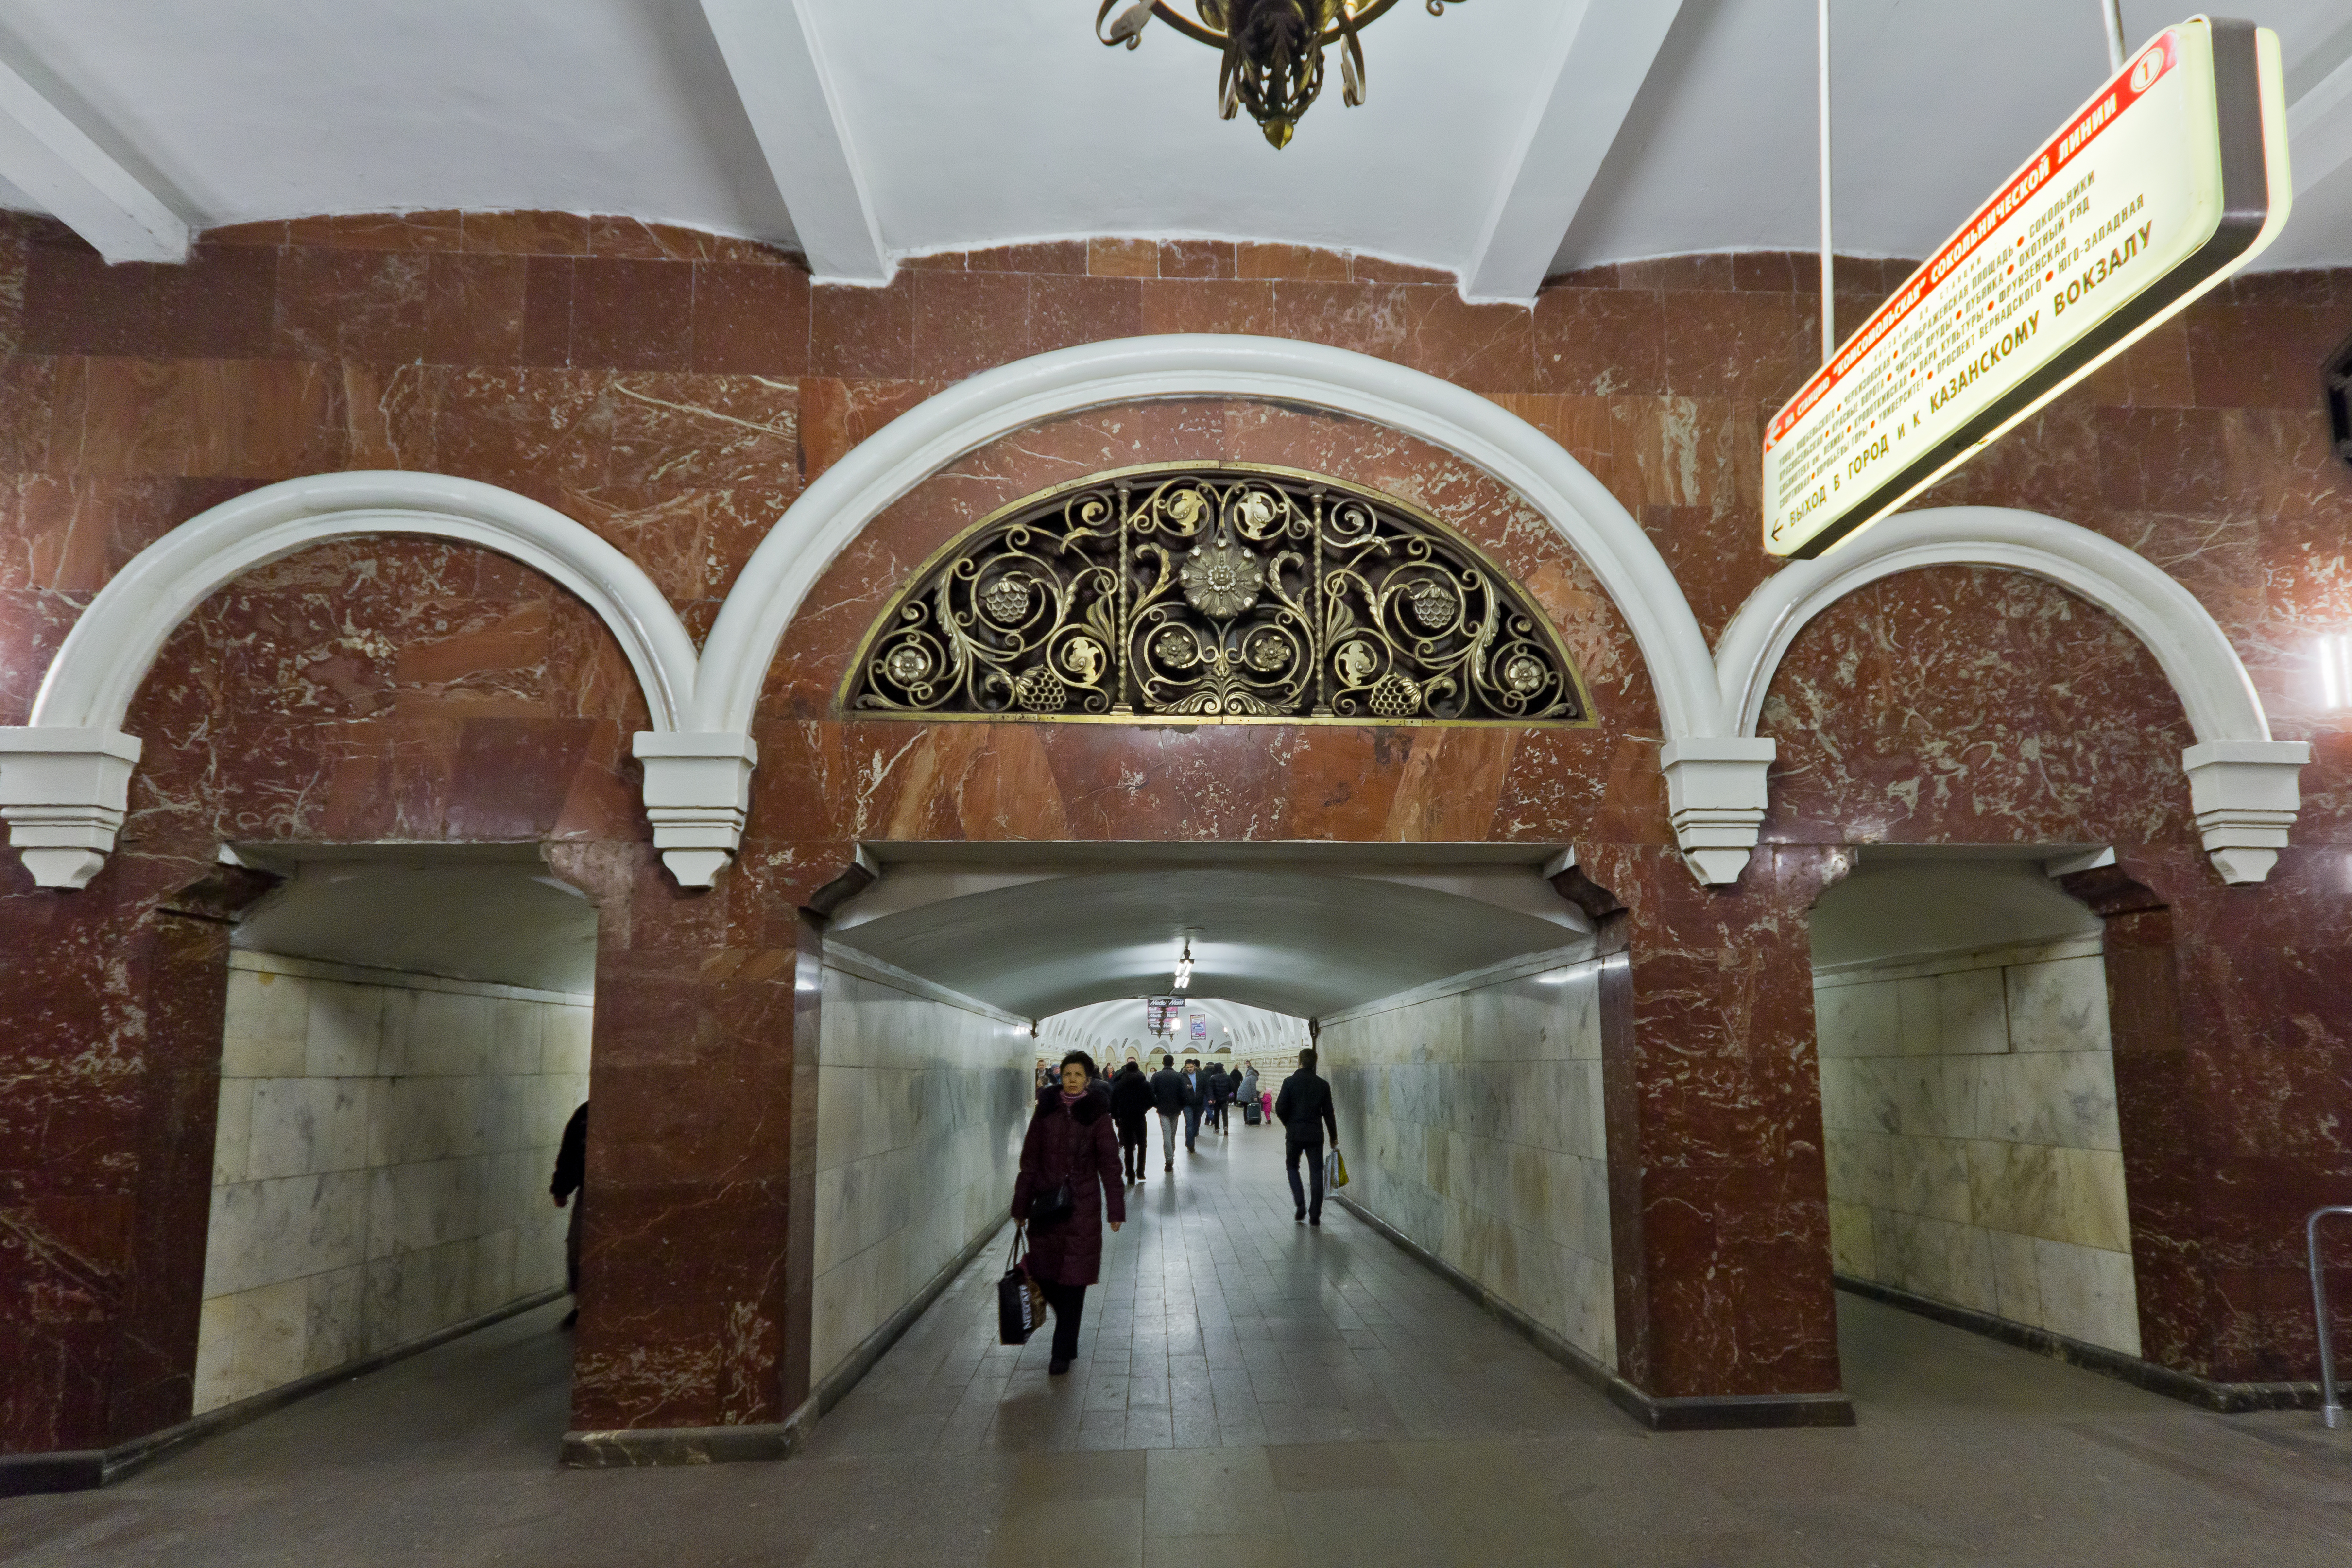 Павелецкий вокзал кольцевая